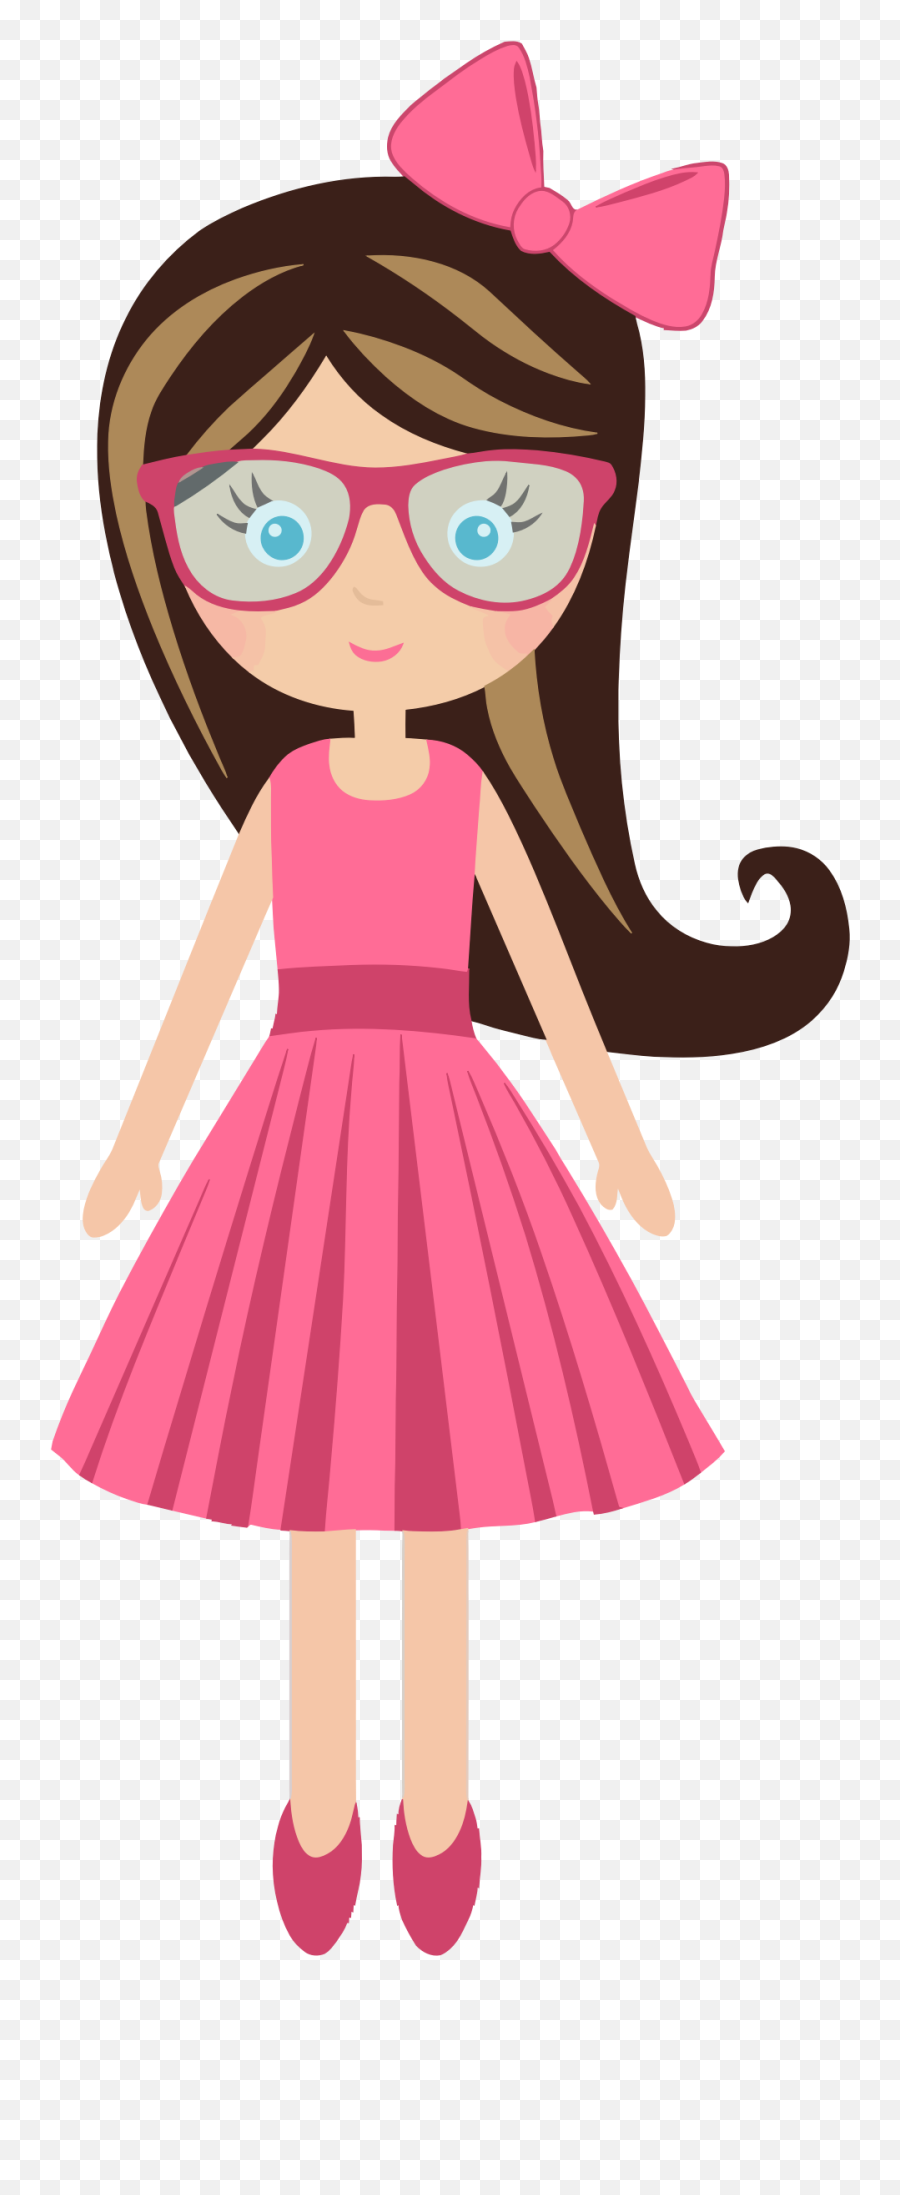 Dress Clipart Cartoon Dress Cartoon Transparent Free For - Dibujos De Niñas Animados Emoji,Emoji Dresses